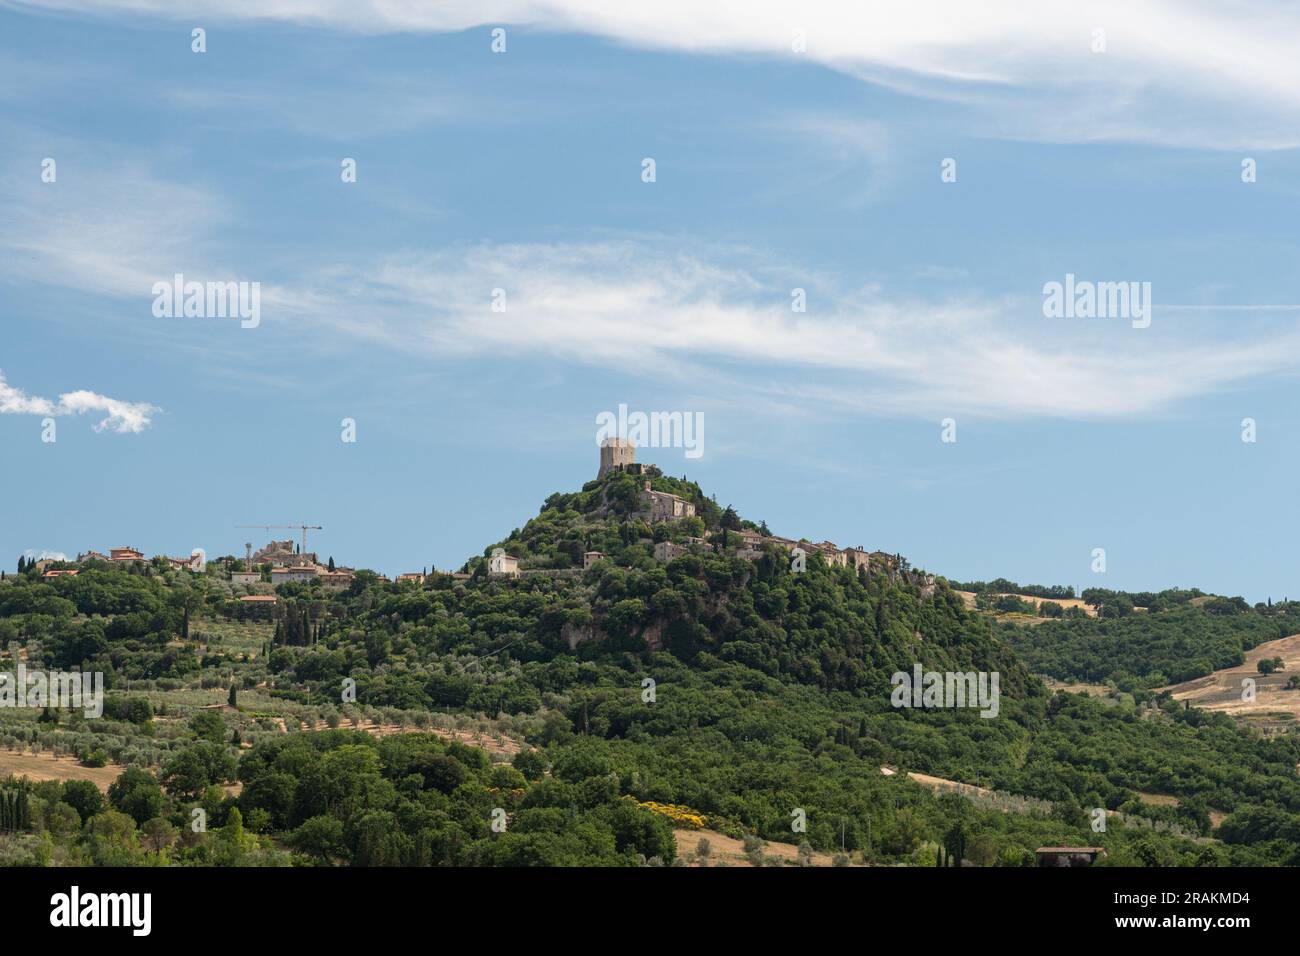 Rocca di Tentennano panoramic view Stock Photo